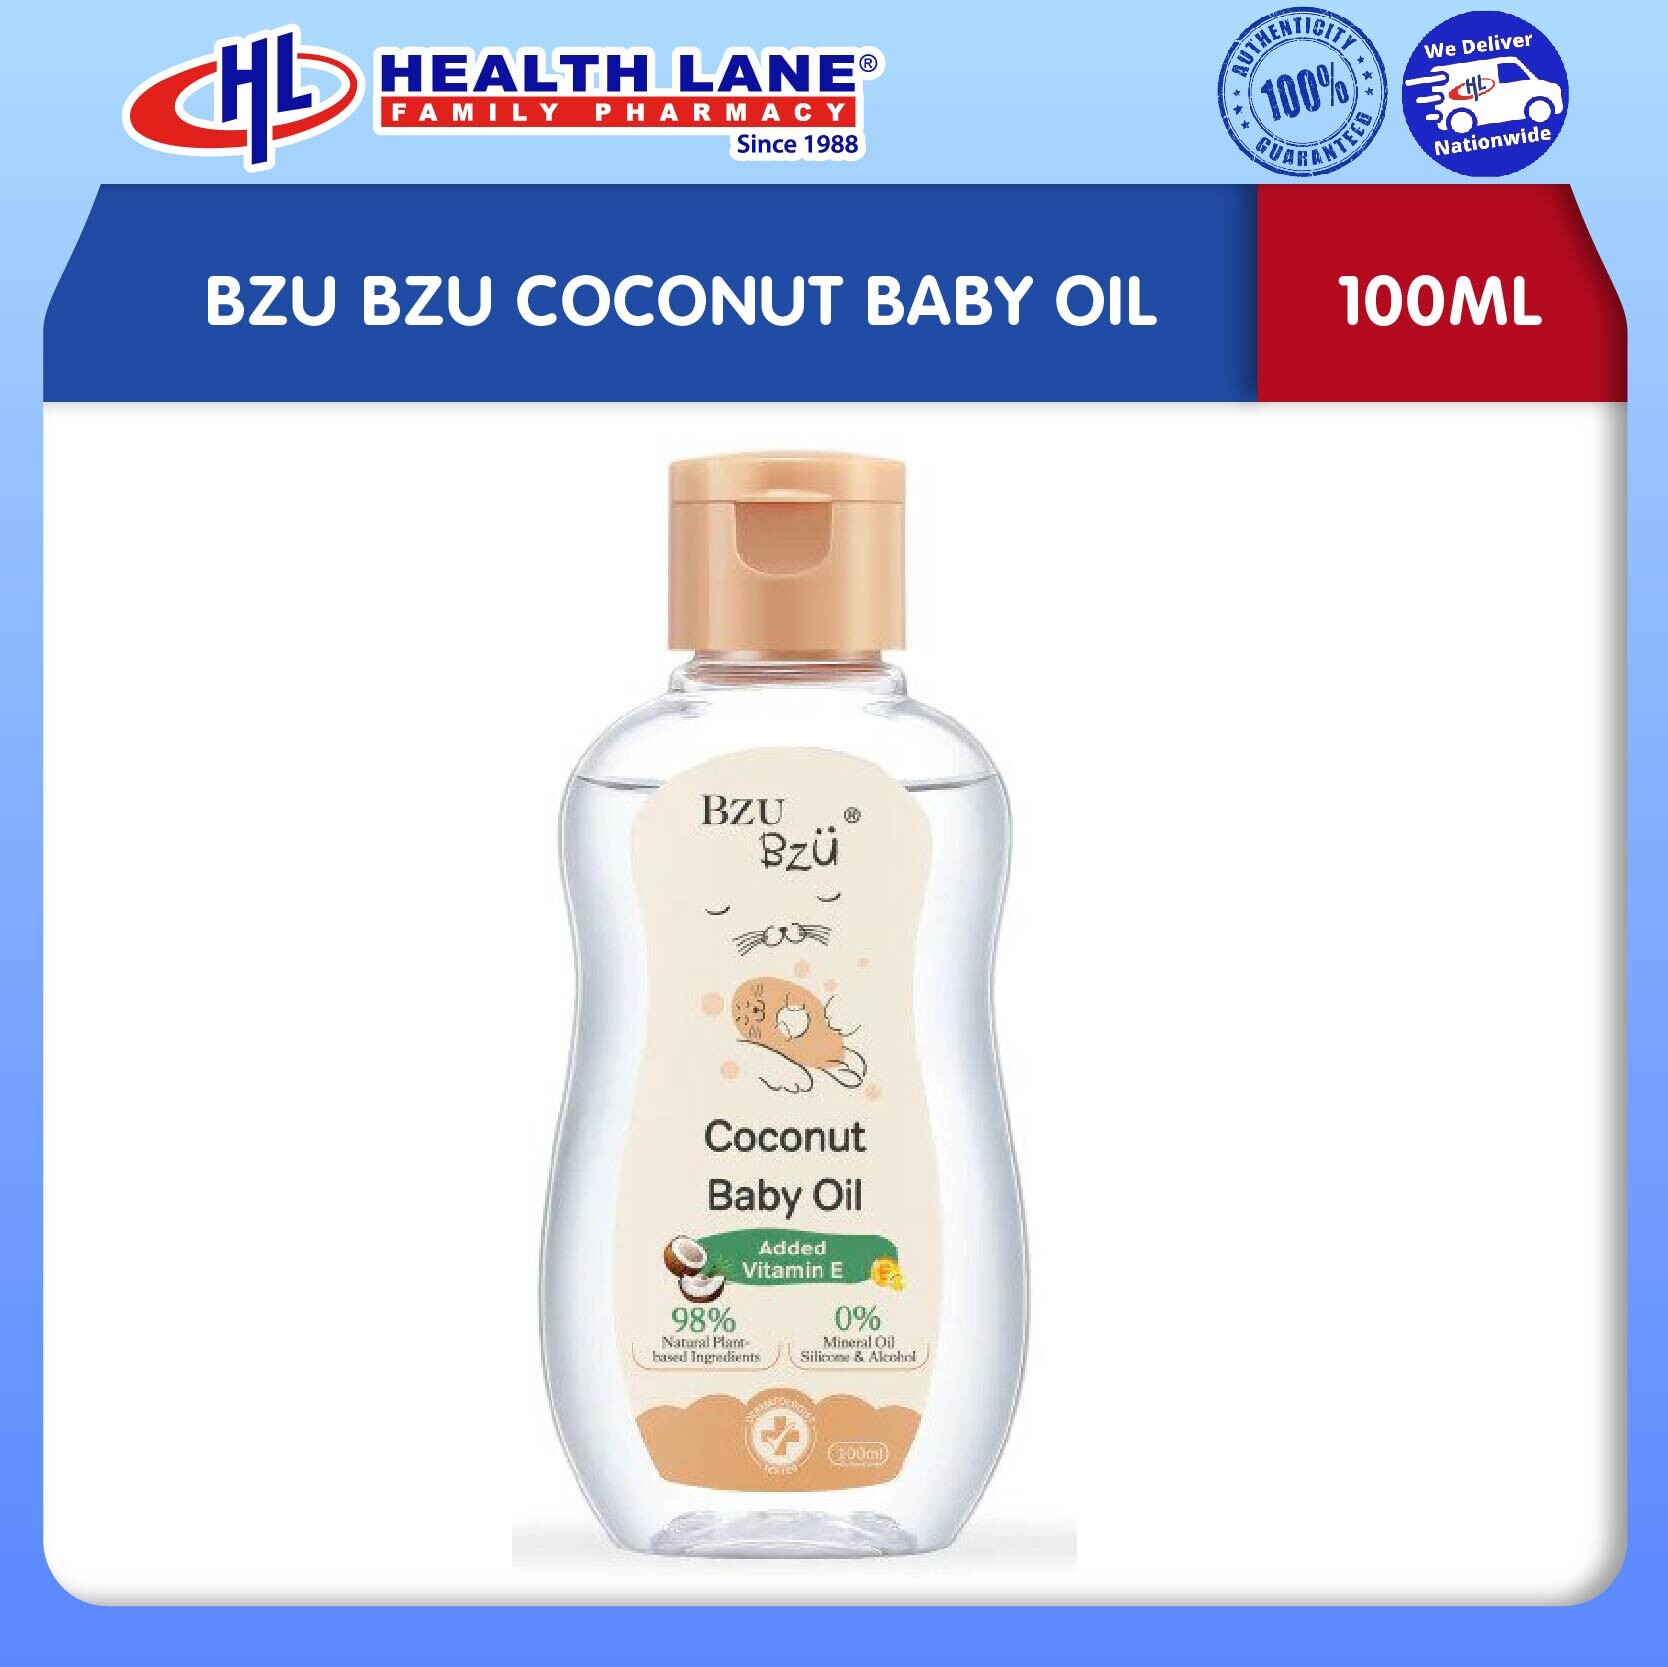 BZU BZU COCONUT BABY OIL (100ML)